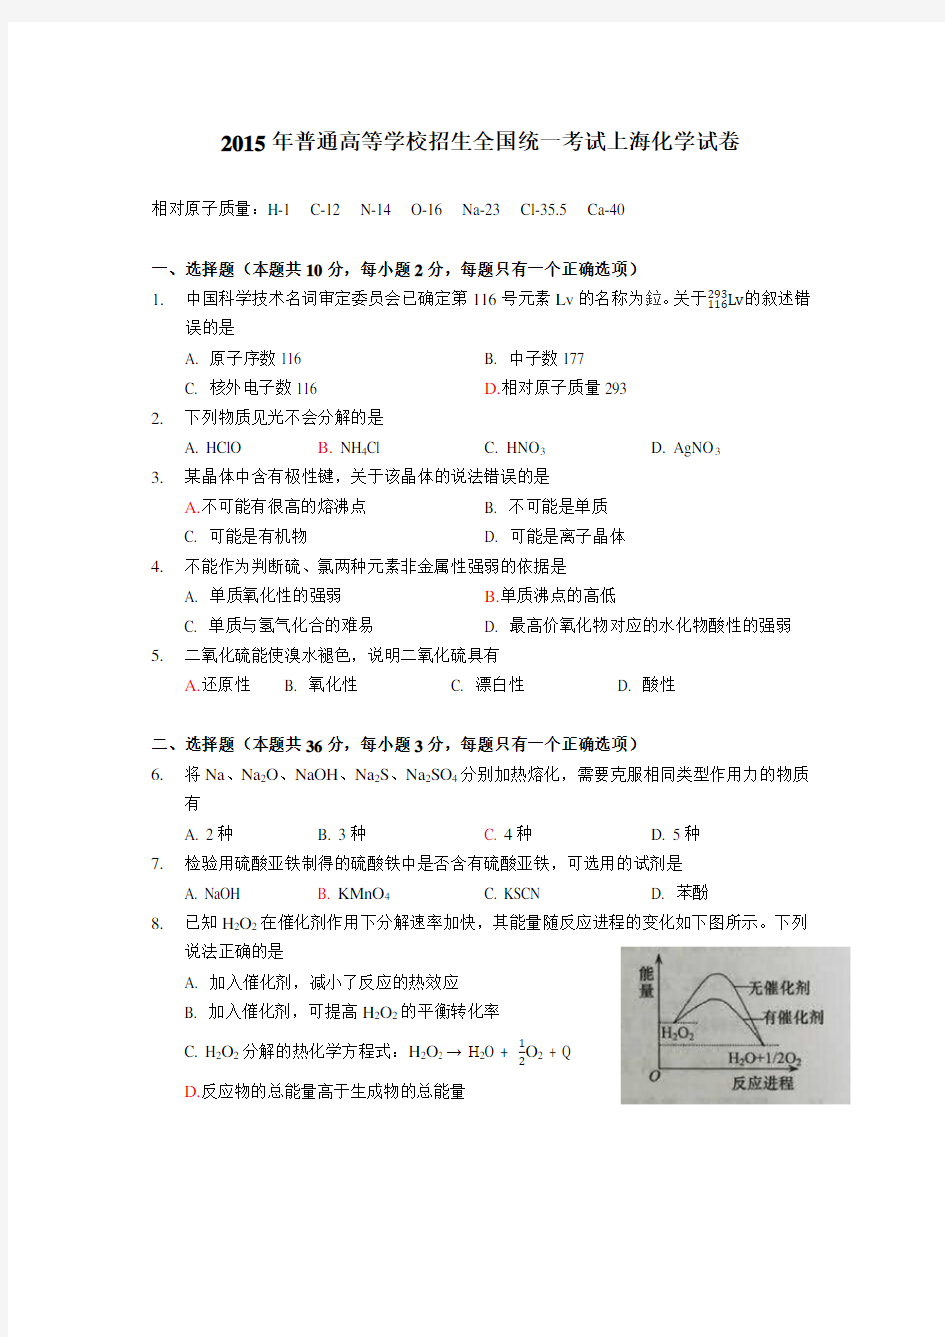 (完整word版)2015年上海高考化学试卷及答案-整理,推荐文档